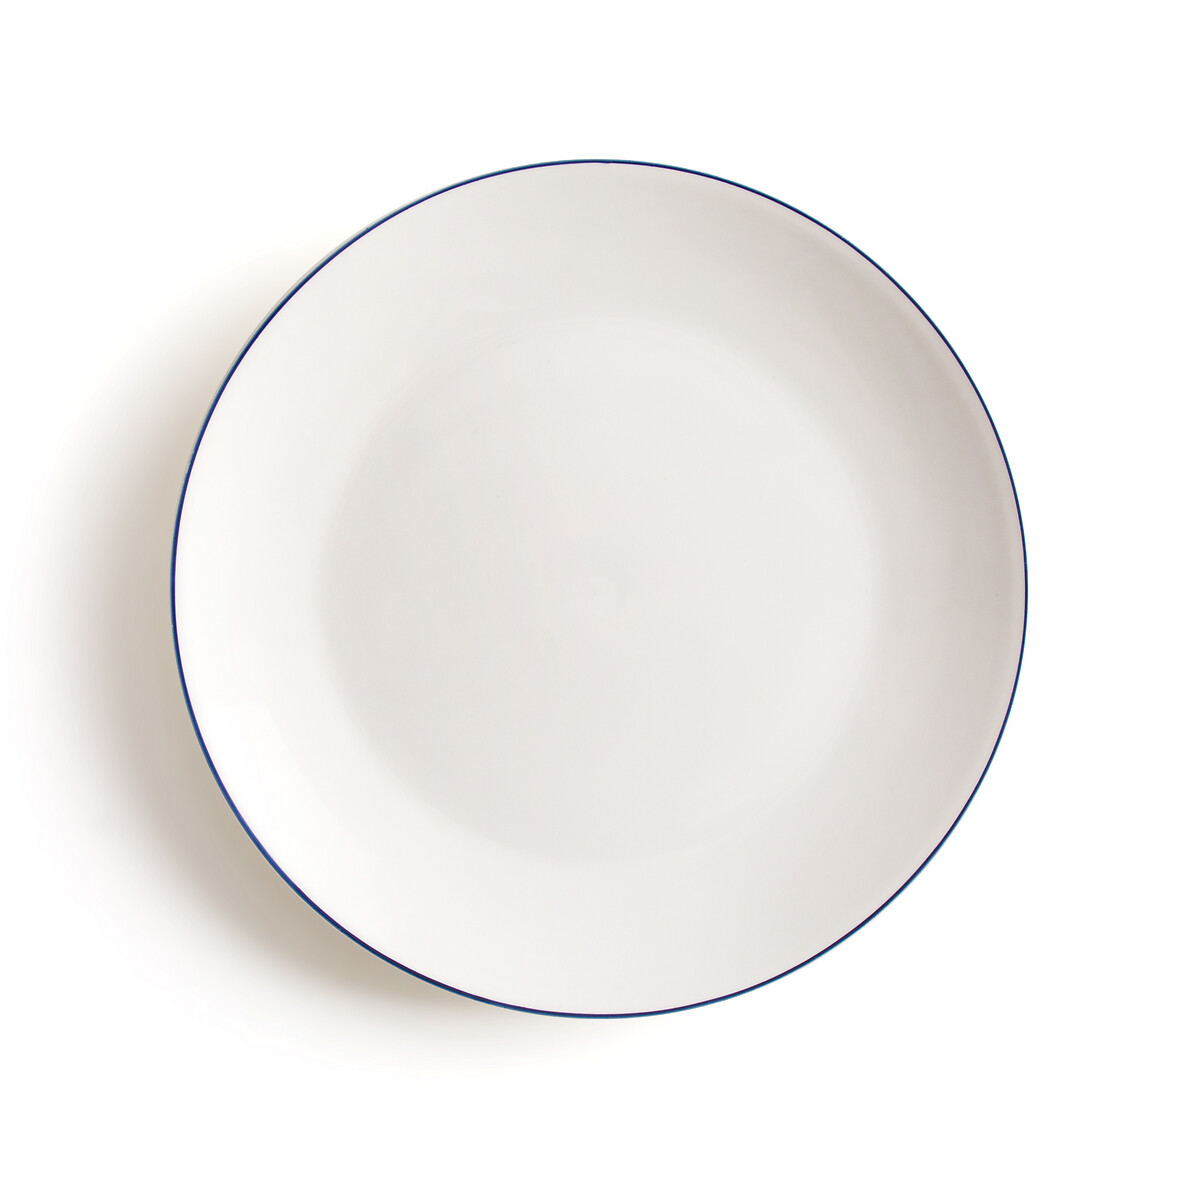 Schaken inschakelen Bevestiging Set van 4 platte borden in porselein, malo wit/blauw La Redoute Interieurs  | La Redoute